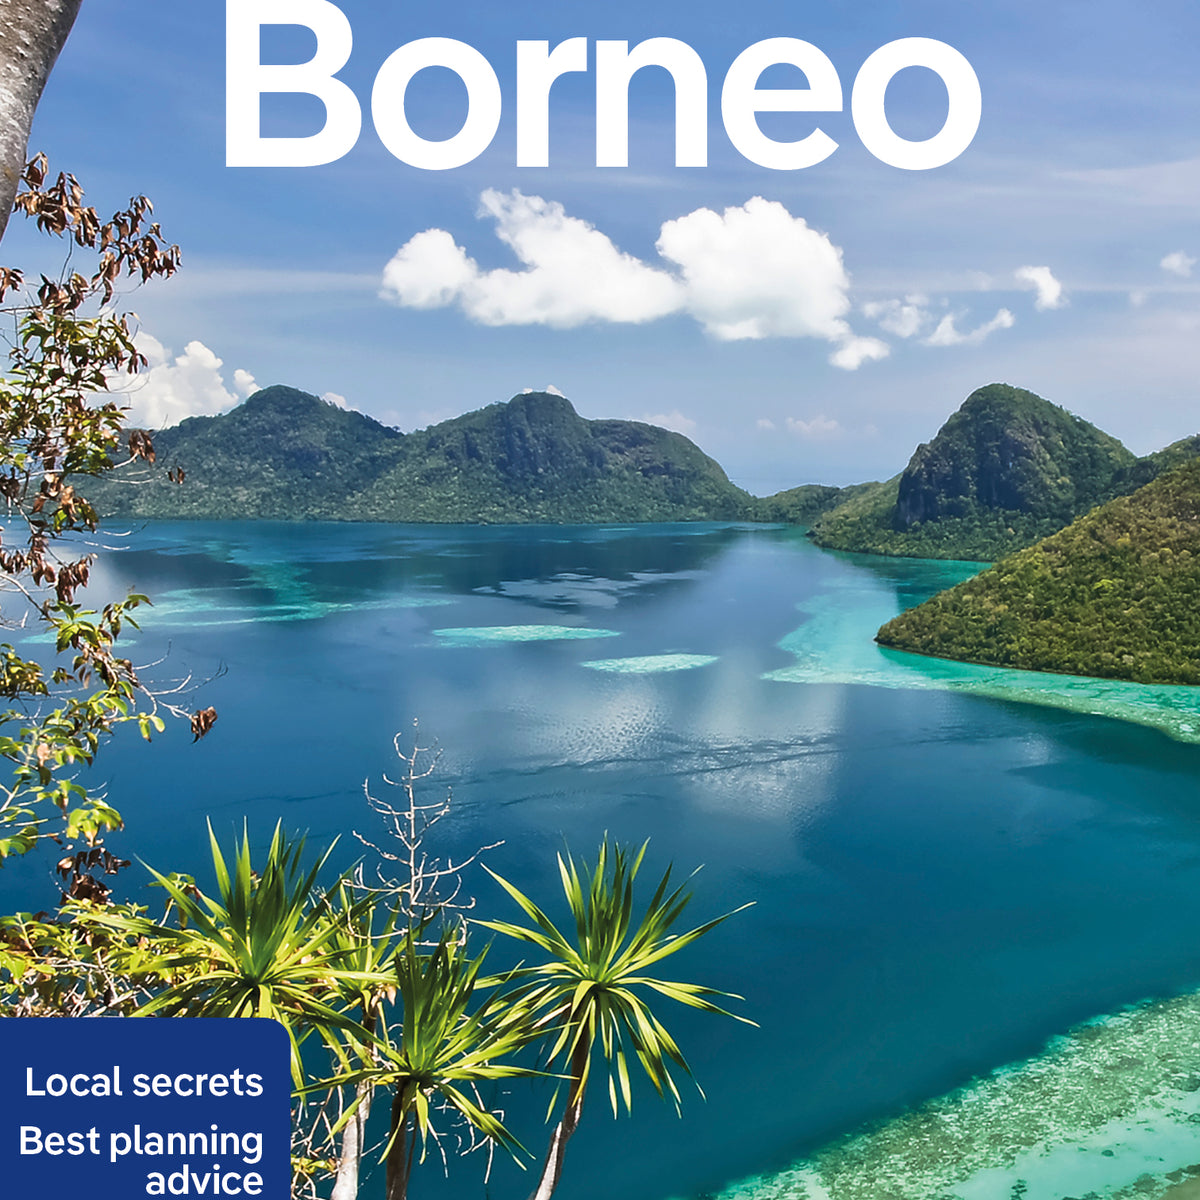 Borneo Travel Book and Ebook